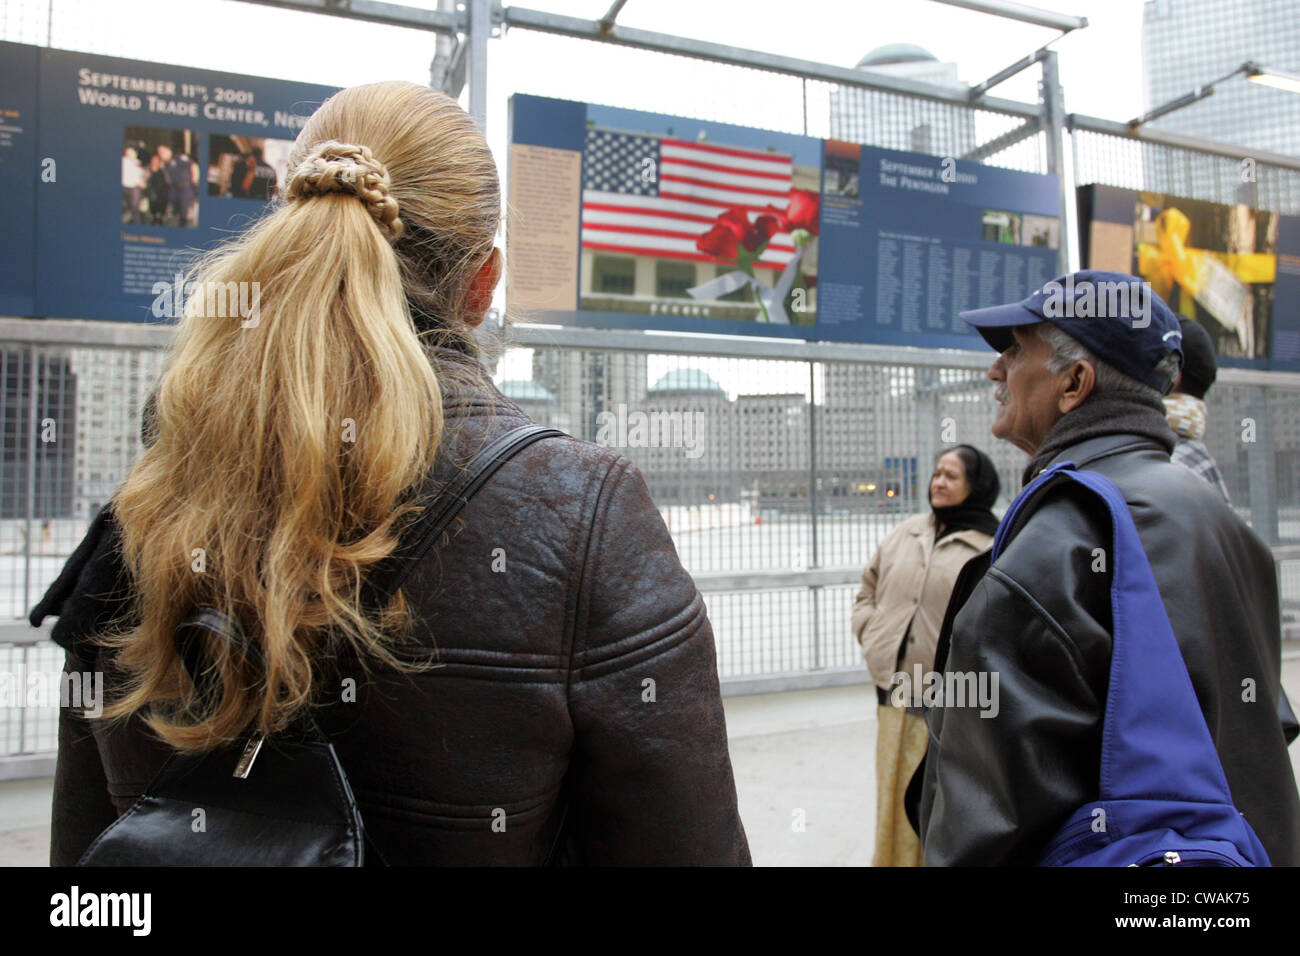 New York, les gens s'informer sur les événements au Ground Zero Banque D'Images